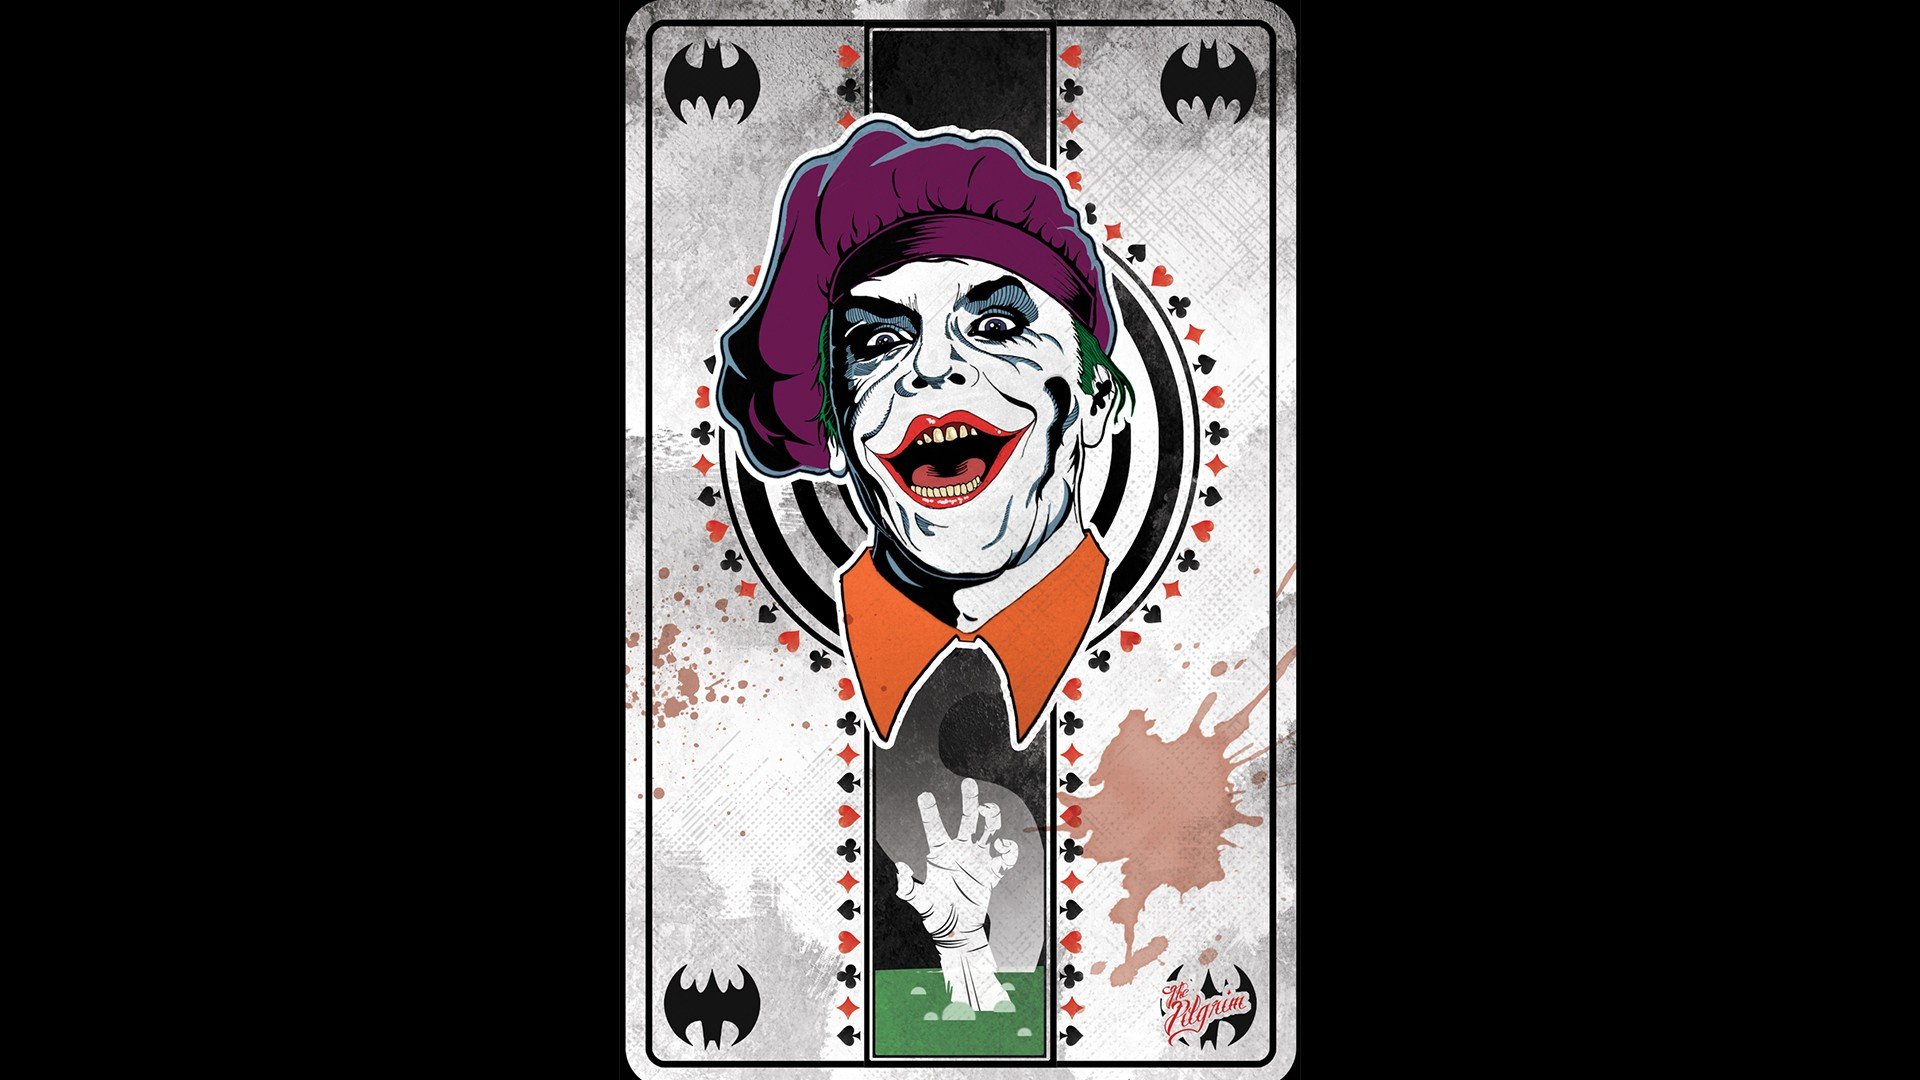 Joker Wallpaper Full Hd For Mobile